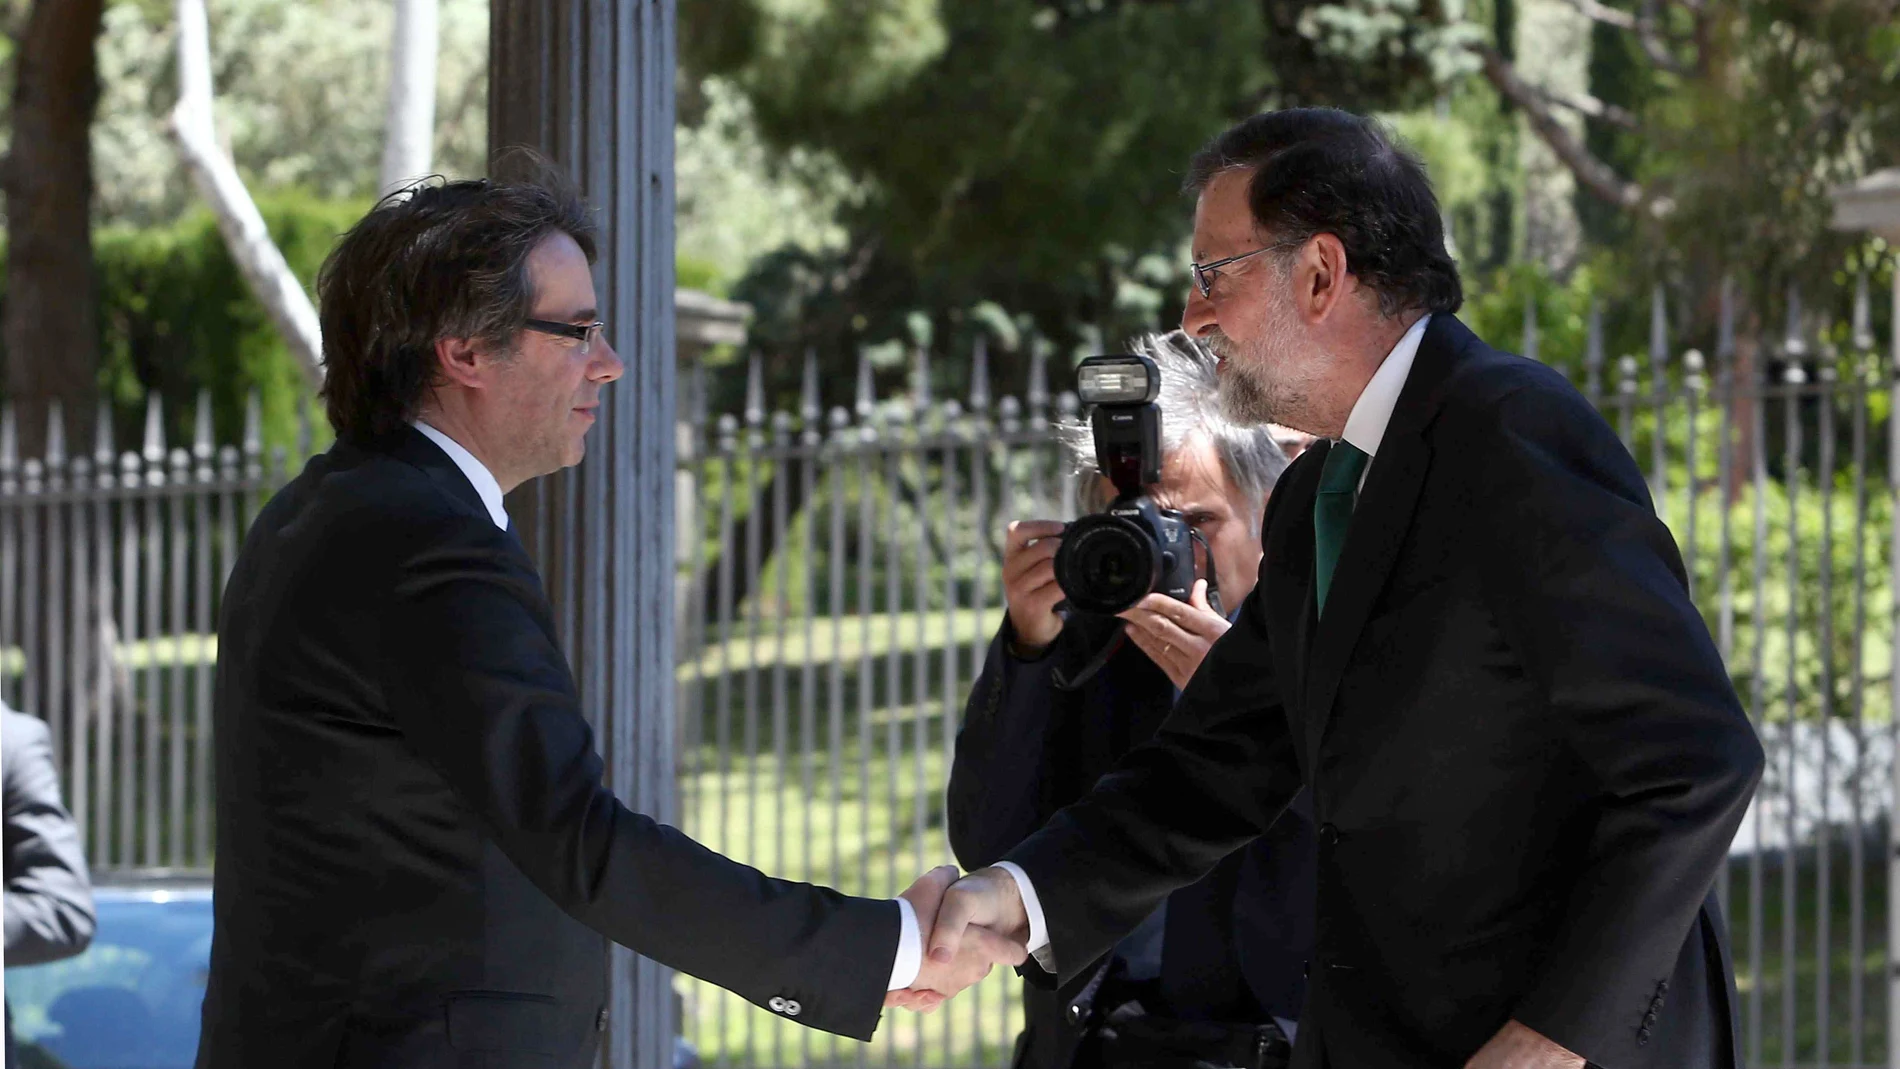 Saludo entre Rajoy y Puigdemont